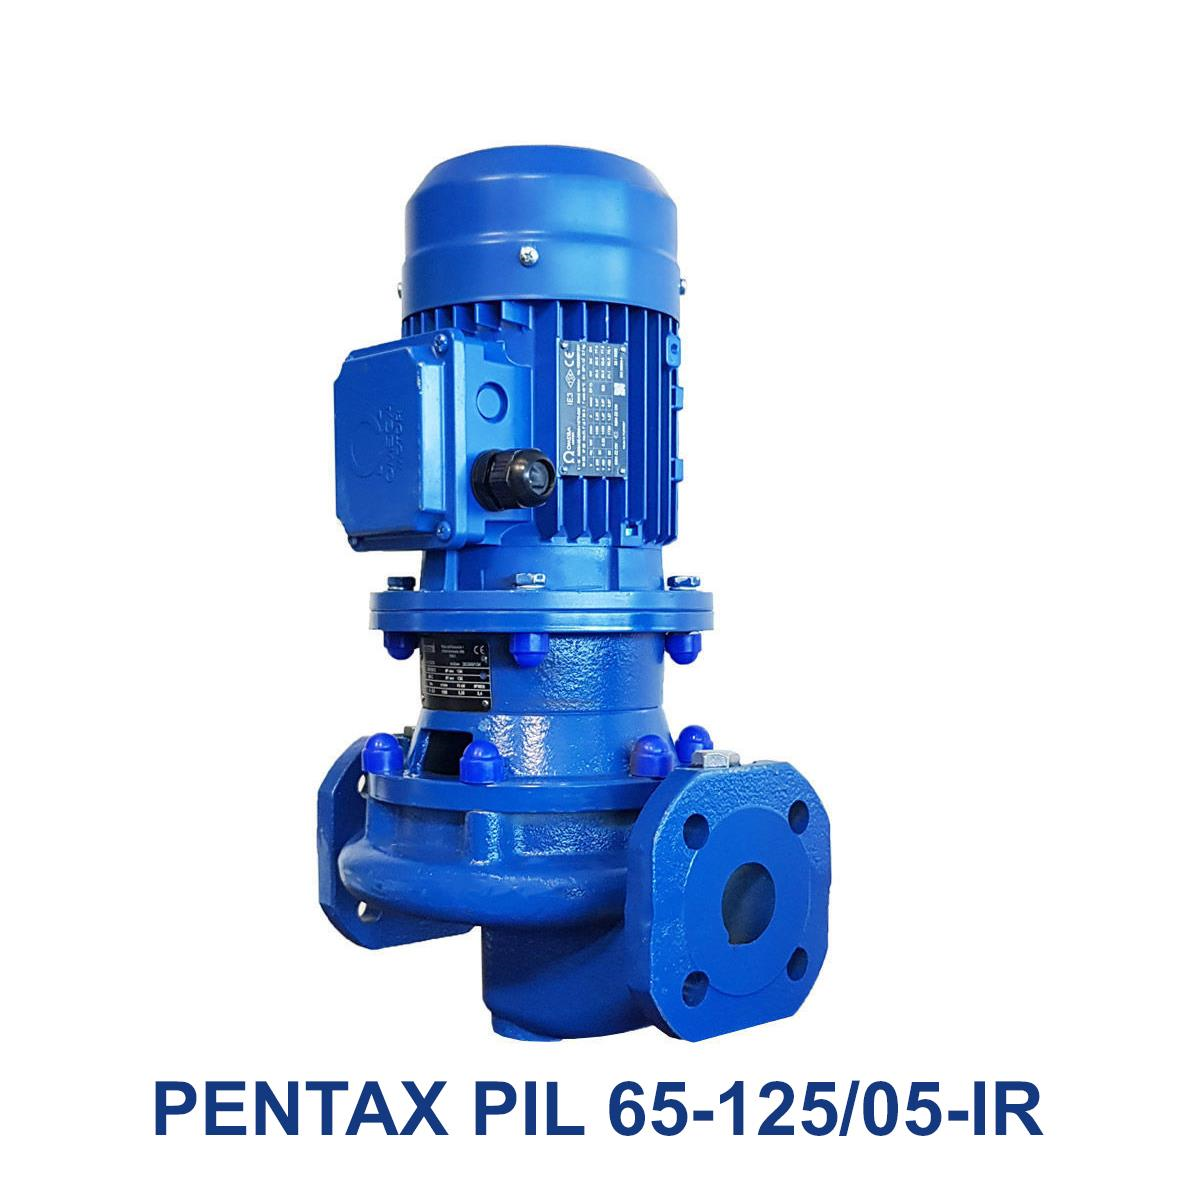 PENTAX-PIL-65-125-05-IR